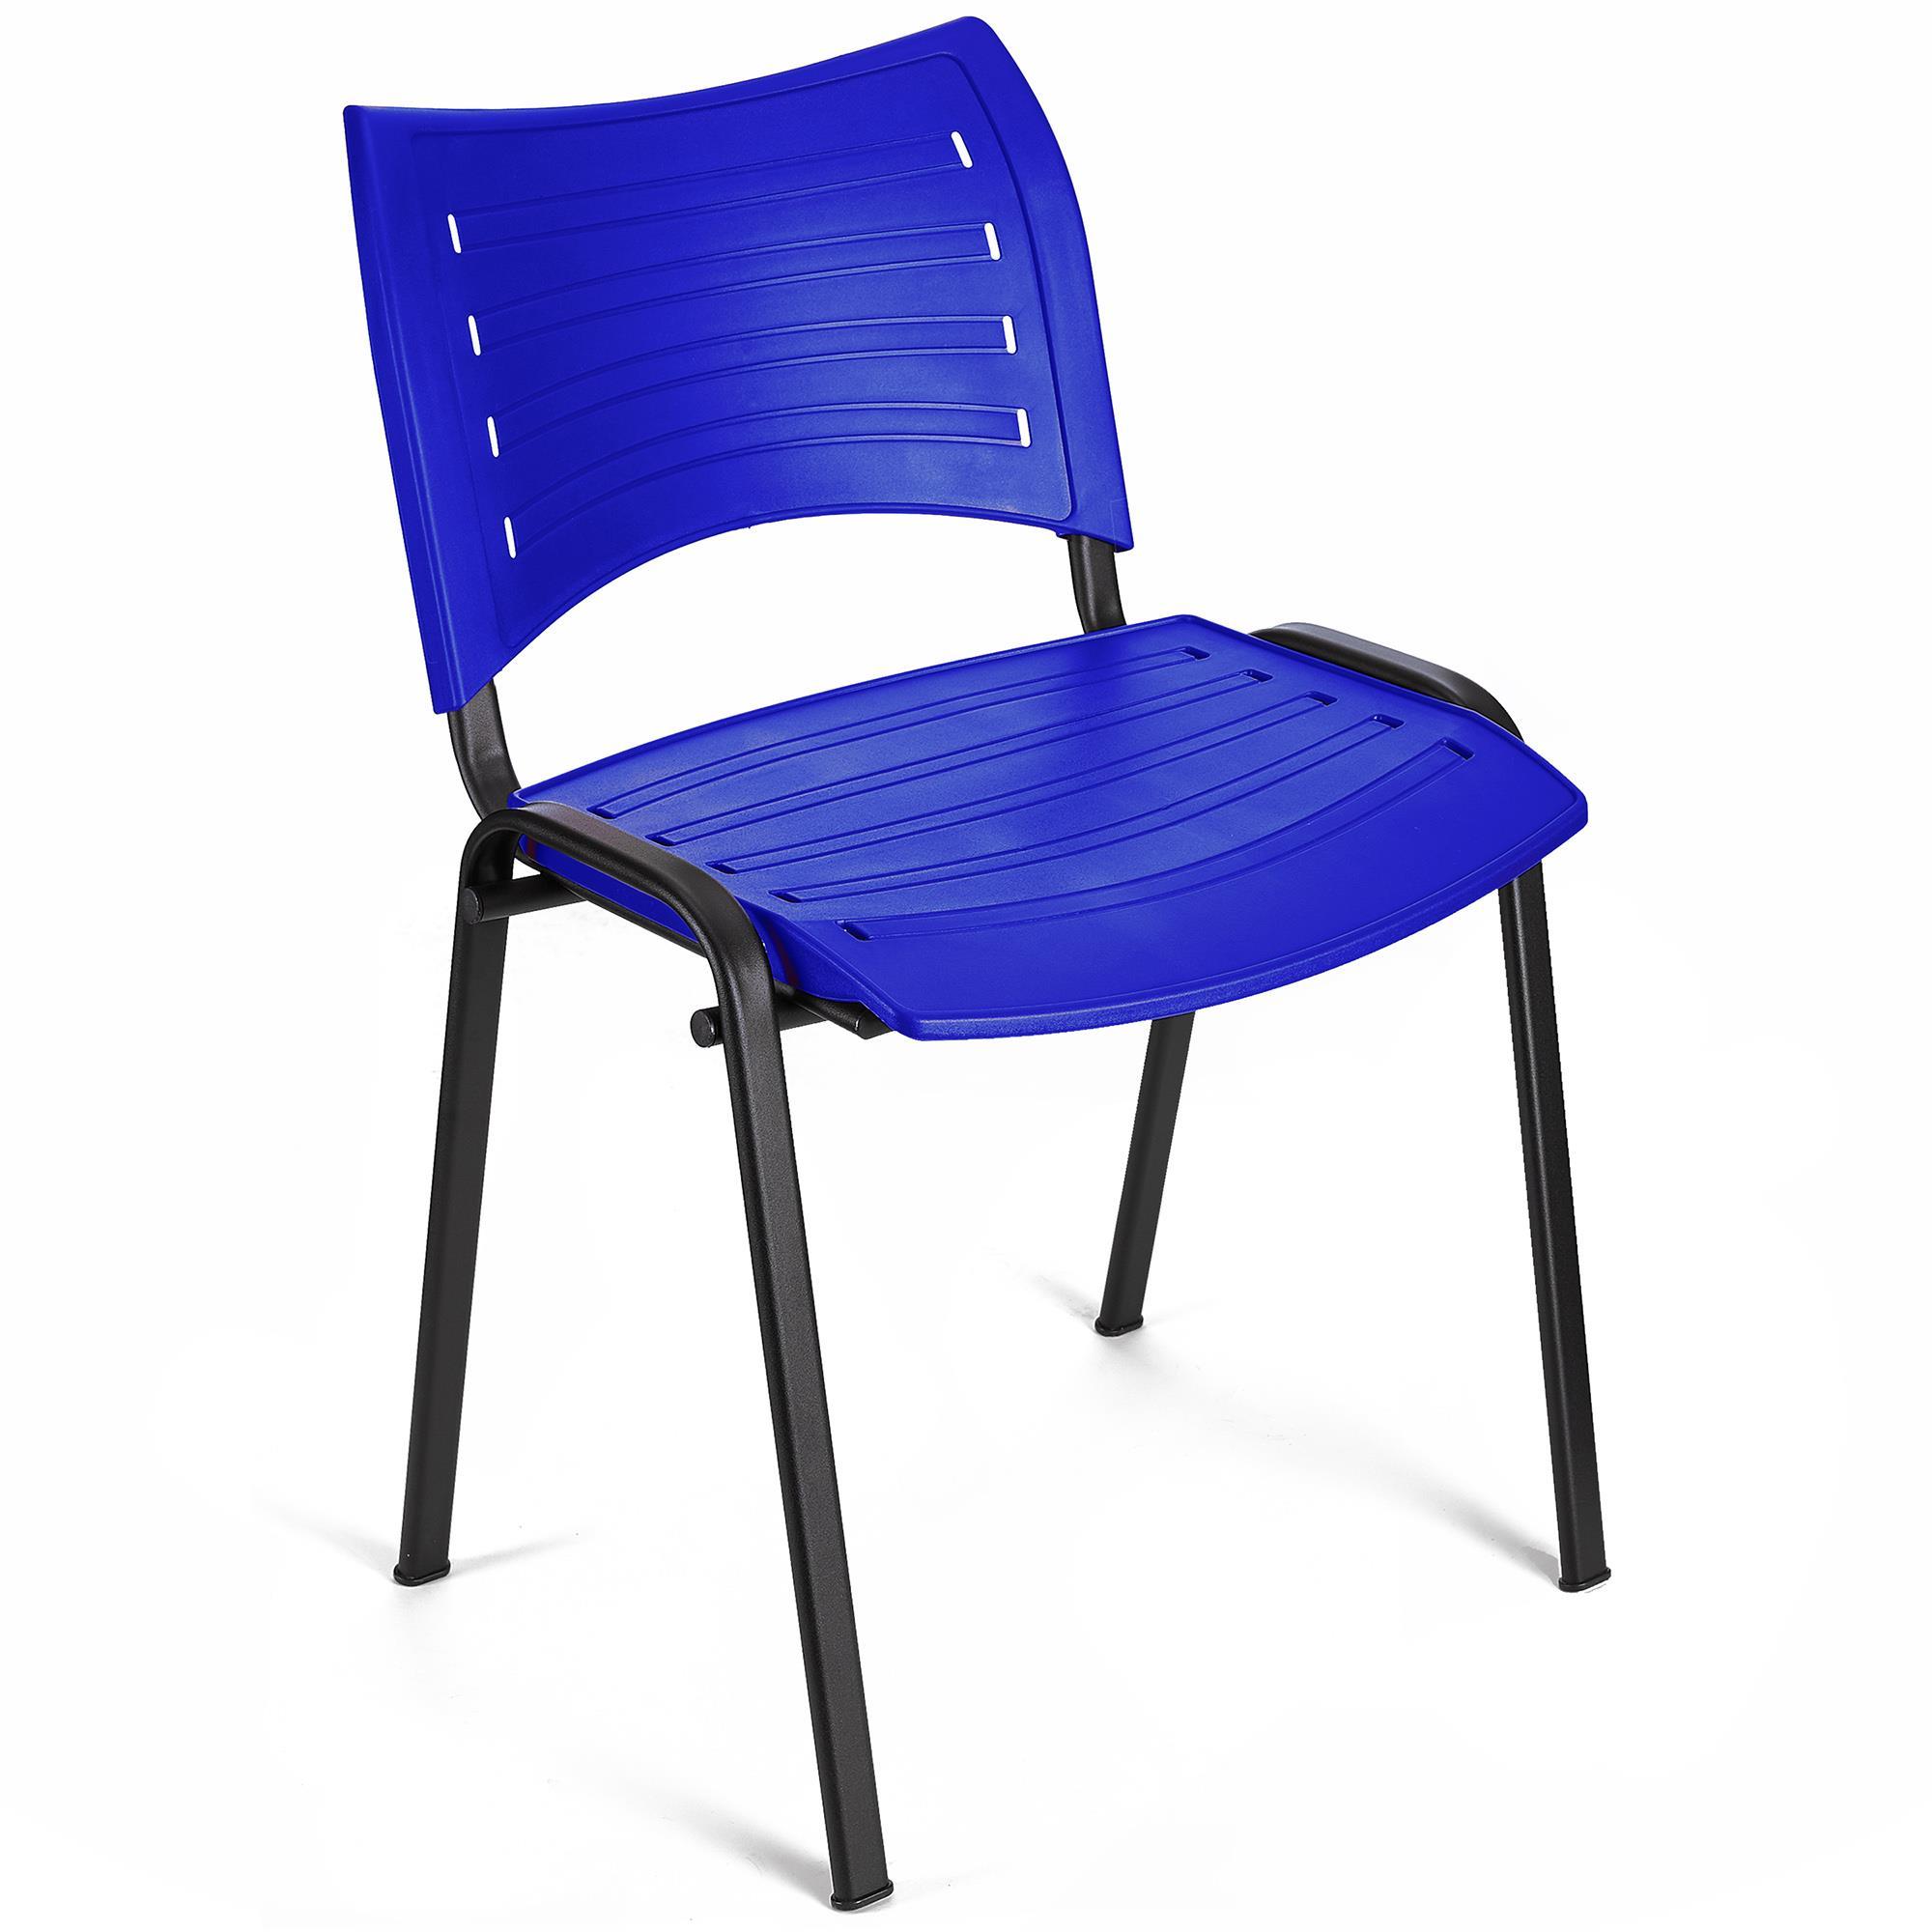 Cadeira de Visita ELVA, Empilhável e Prática, Confortável, Pernas Pretas, Cor Azul